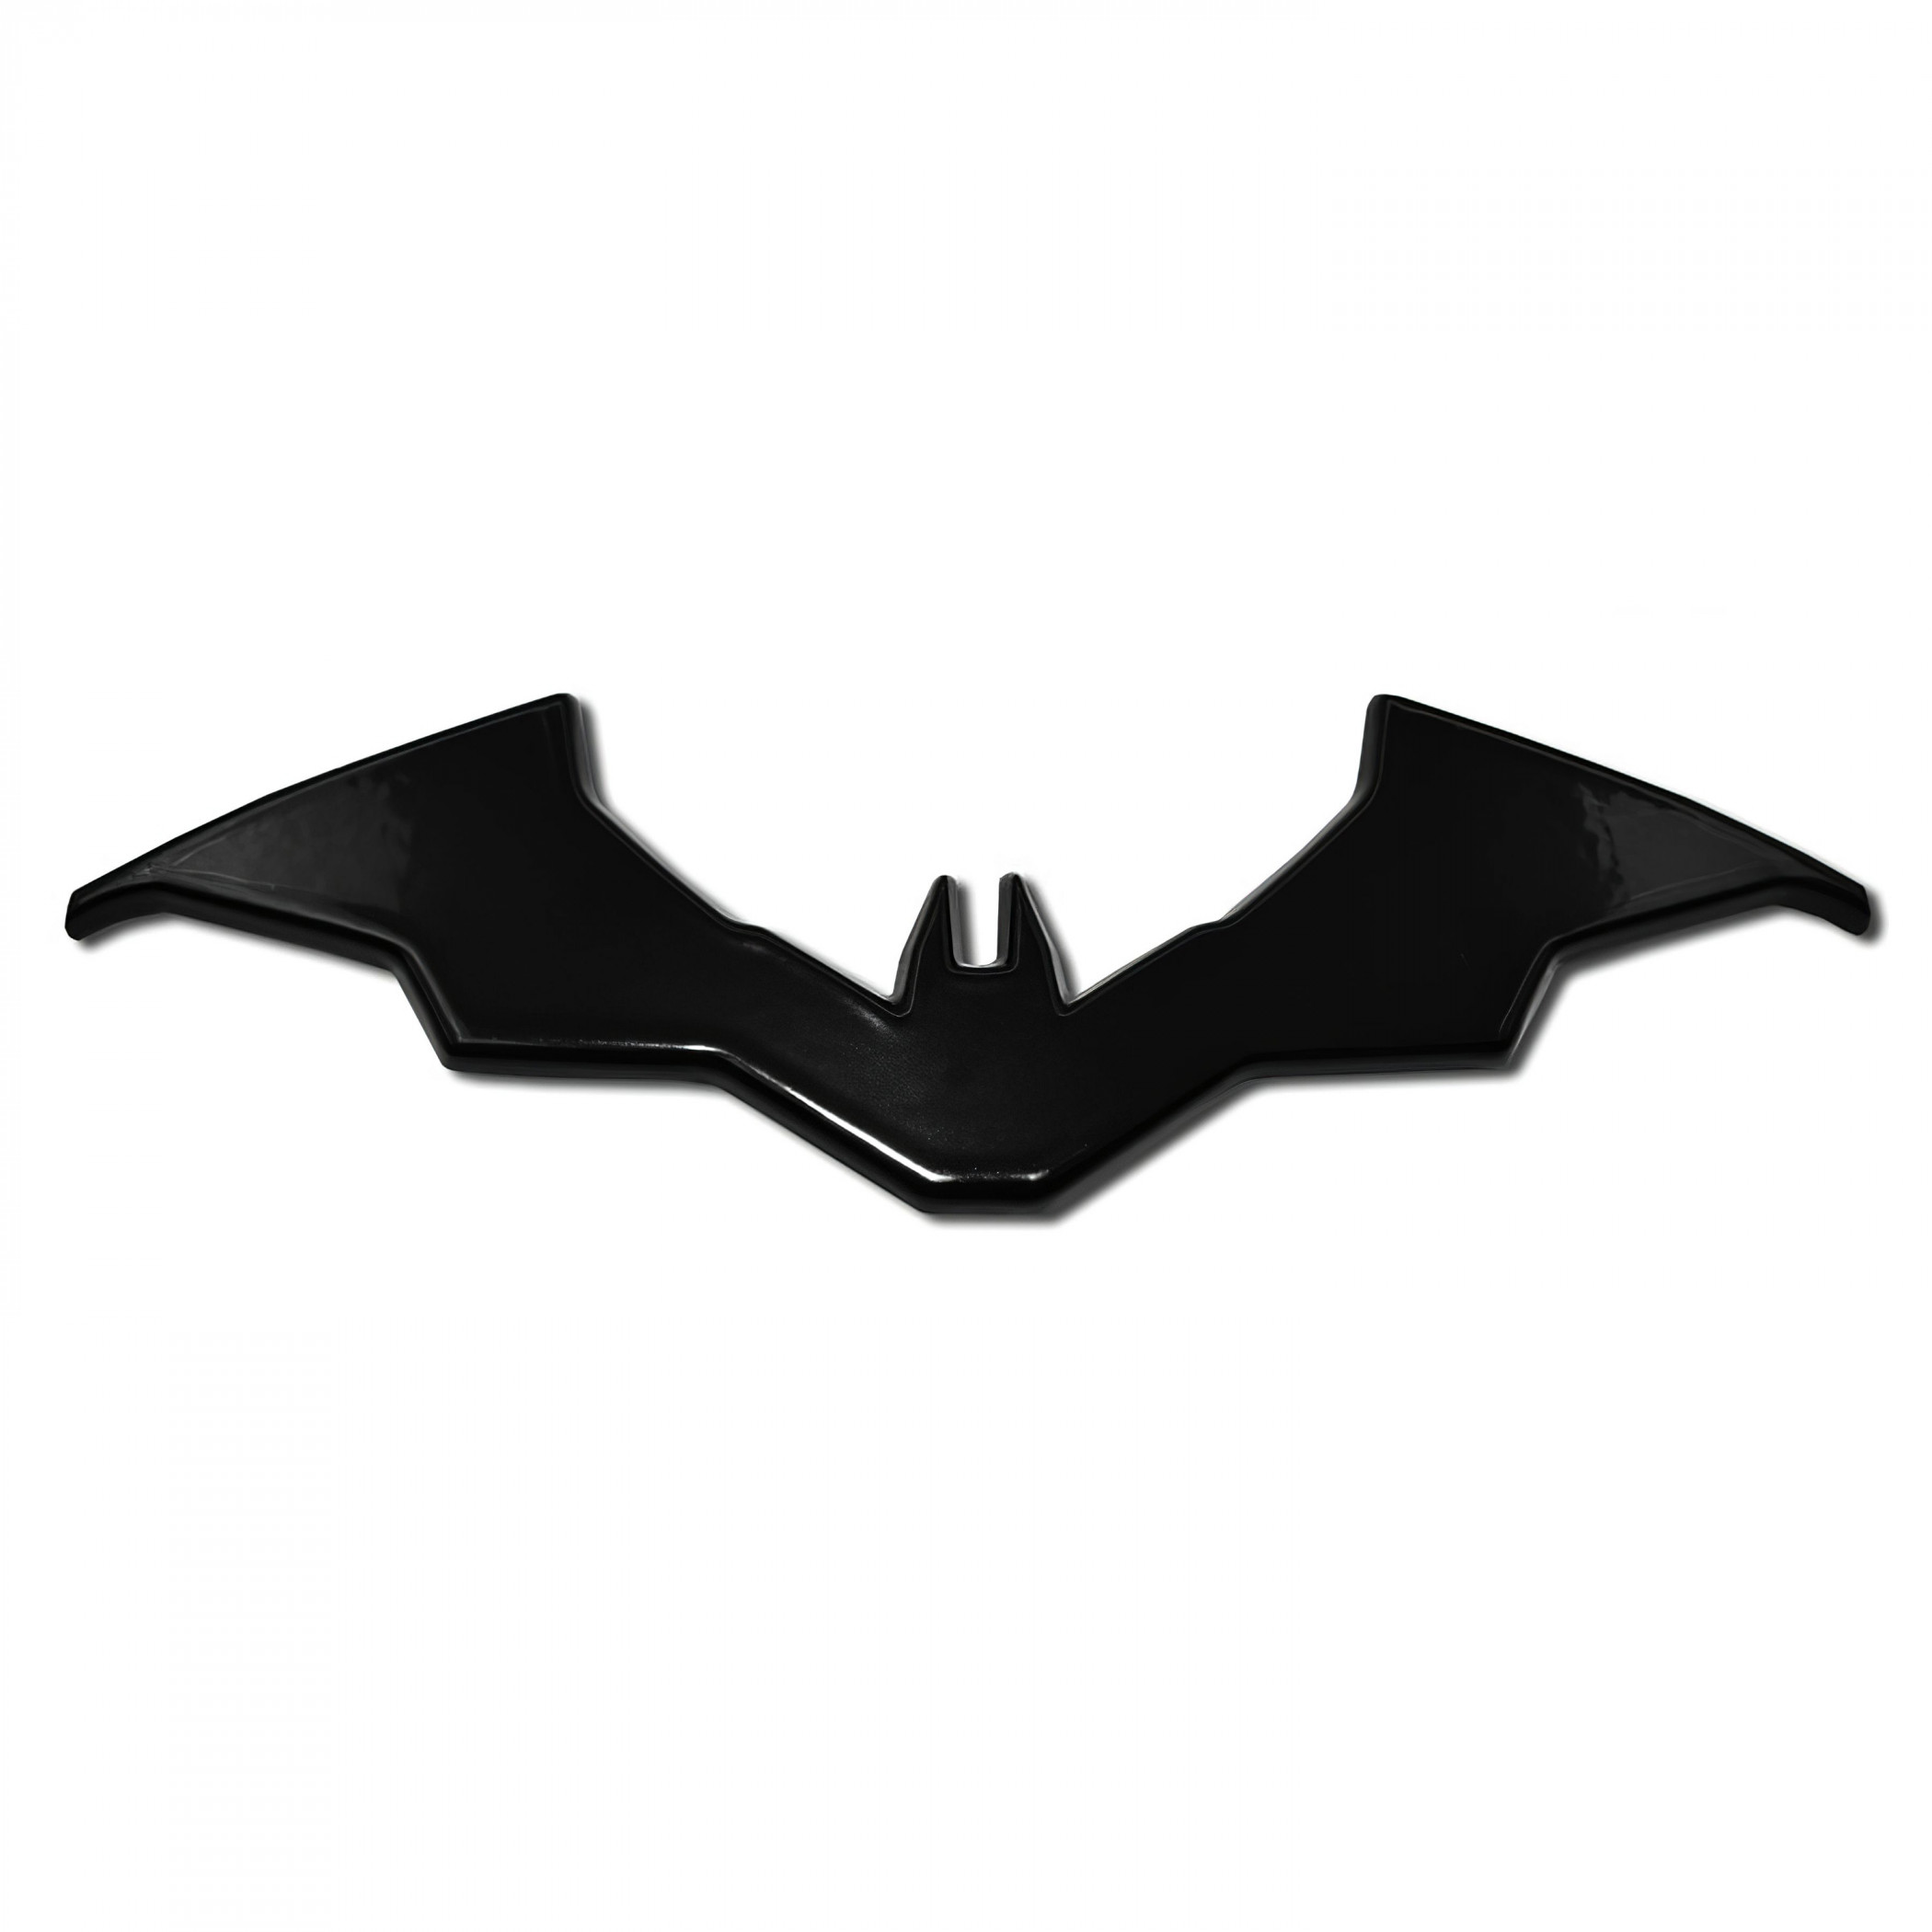 The Batman Movie Logo Black Car Emblem